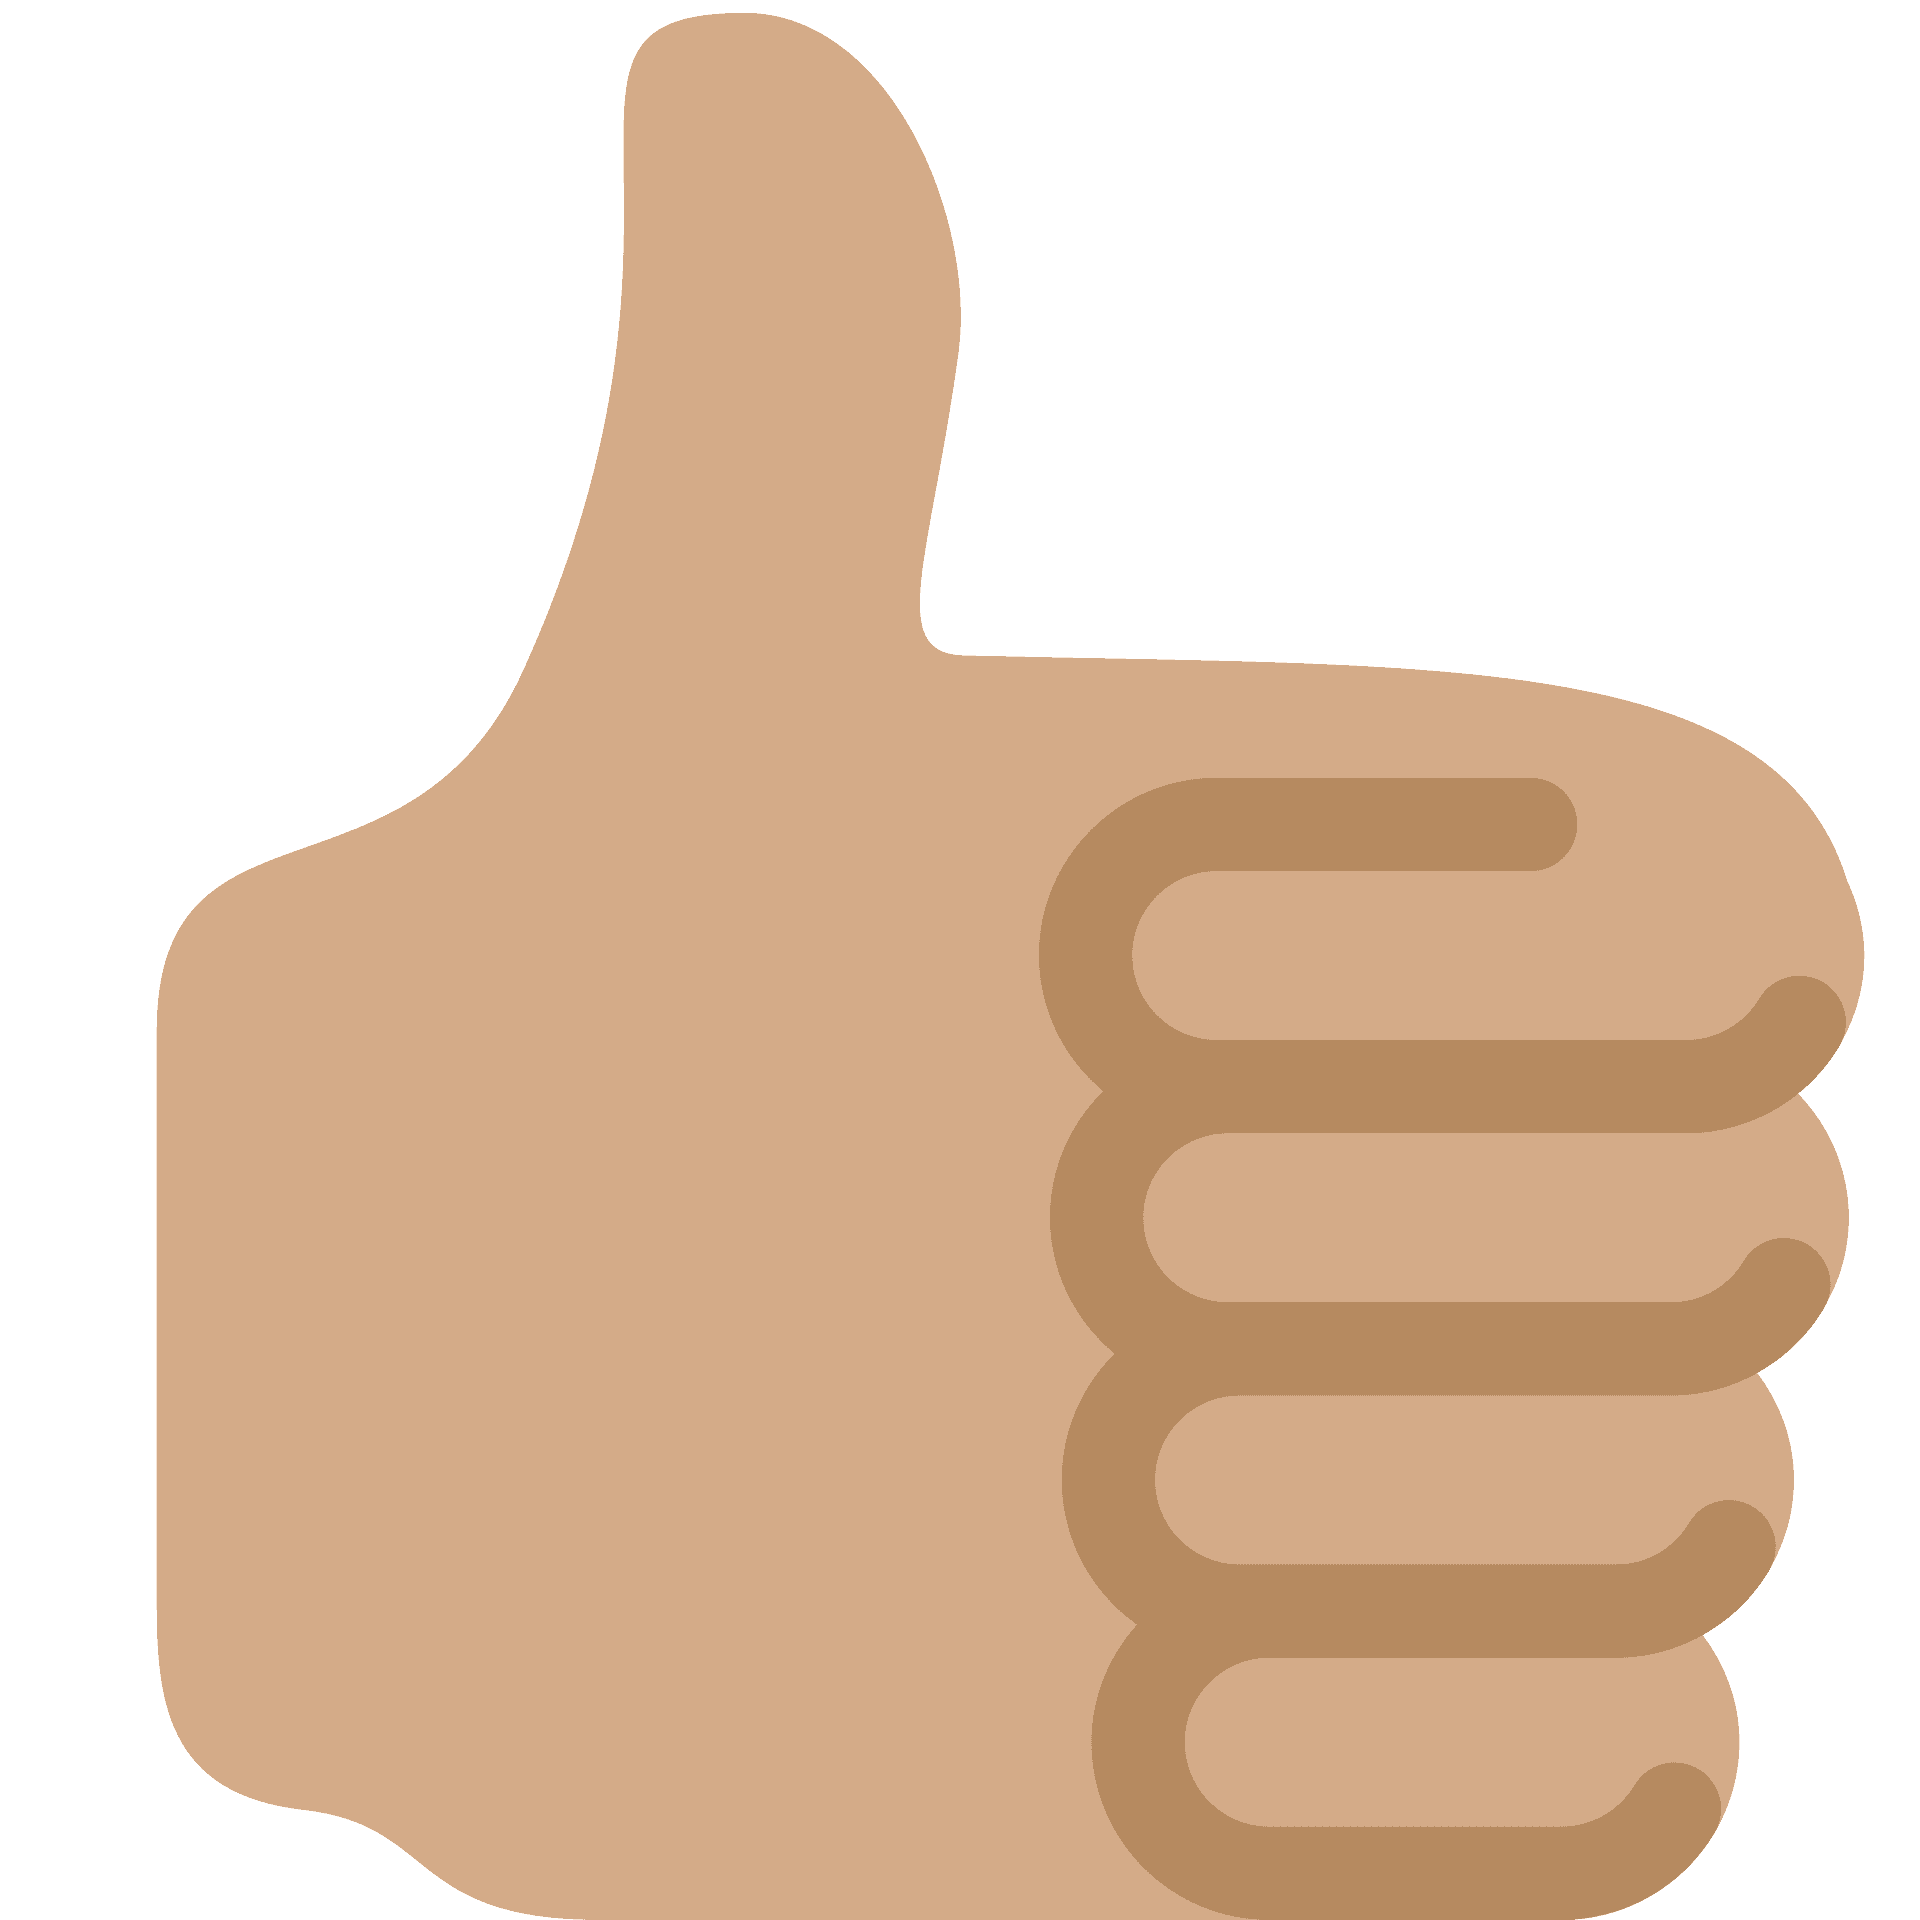 Thumbs Up Emoji PNG Free Image